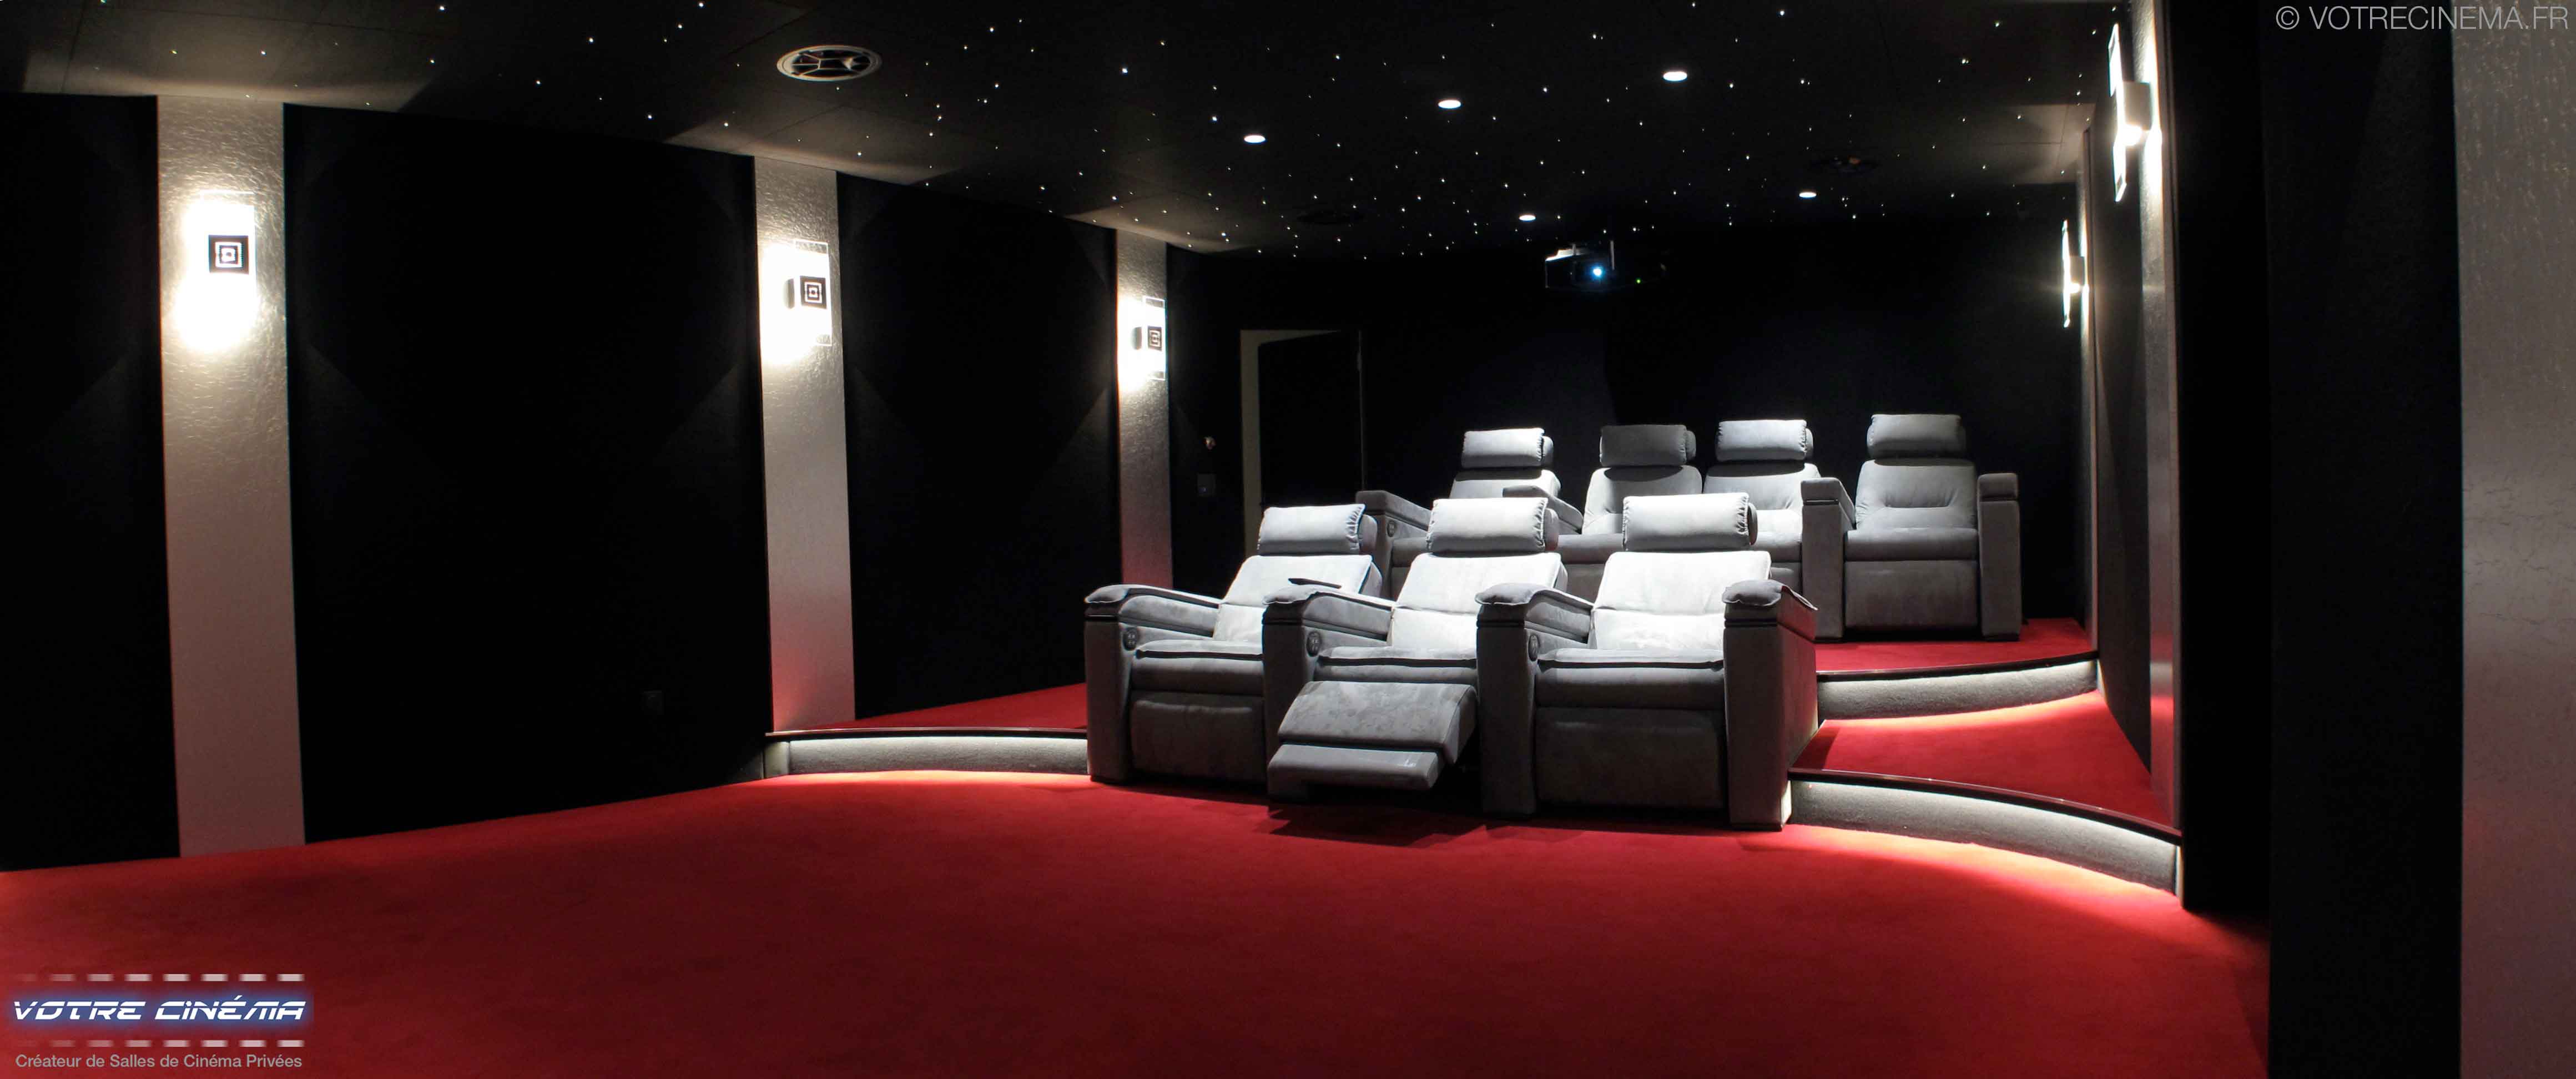 Création salle cinéma privée Rouen